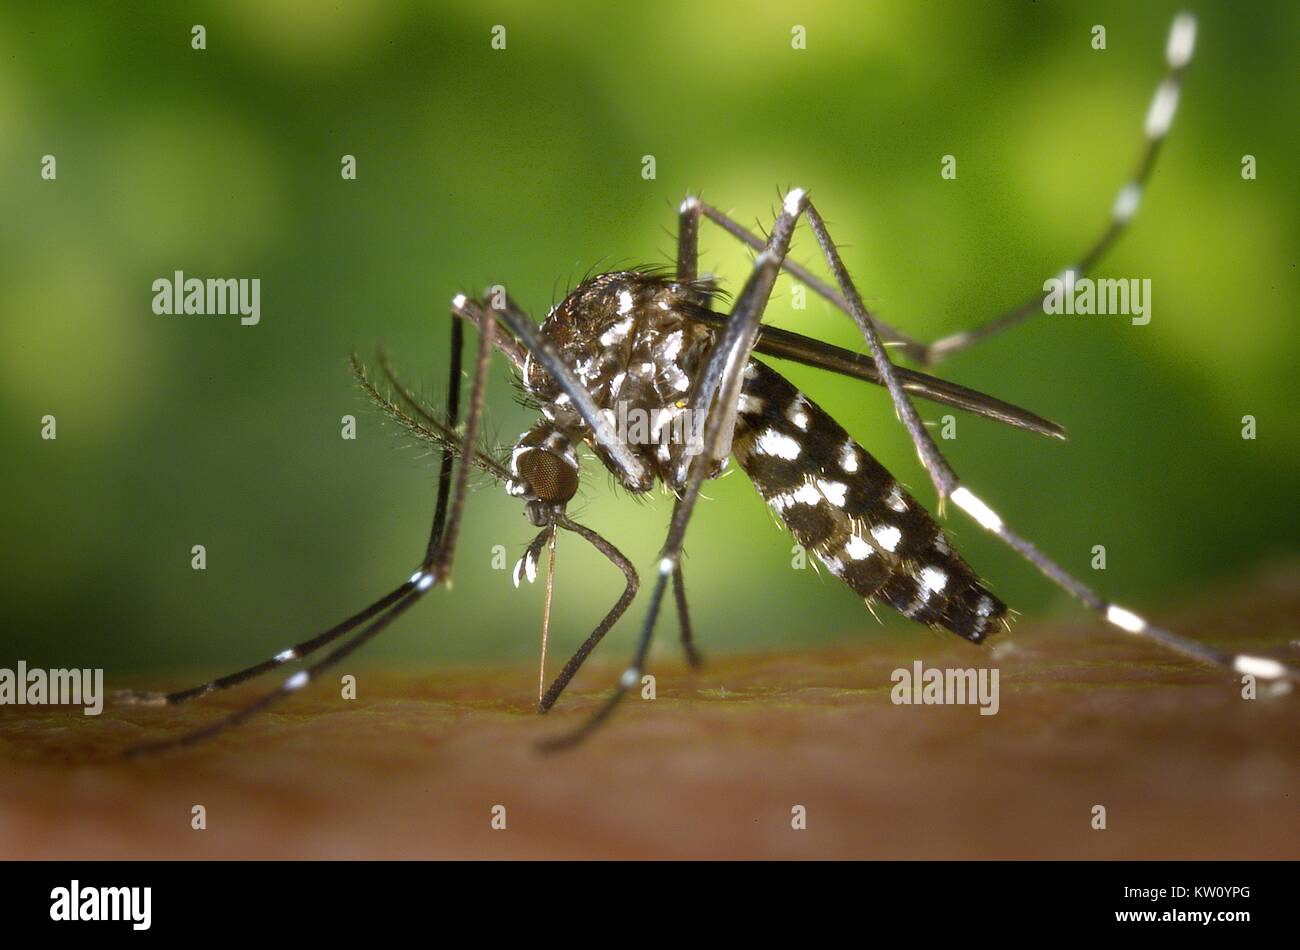 Una femmina di Aedes albopictus mosquito alimentazione su un ospite umano. Al di sotto di successo della trasmissione sperimentale, Aedes albopictus è stata trovata essere un vettore del virus del Nilo occidentale. Aedes è un genere della famiglia Culicine di zanzare. Immagine cortesia CDC/James Gathany, 2002. Foto Stock